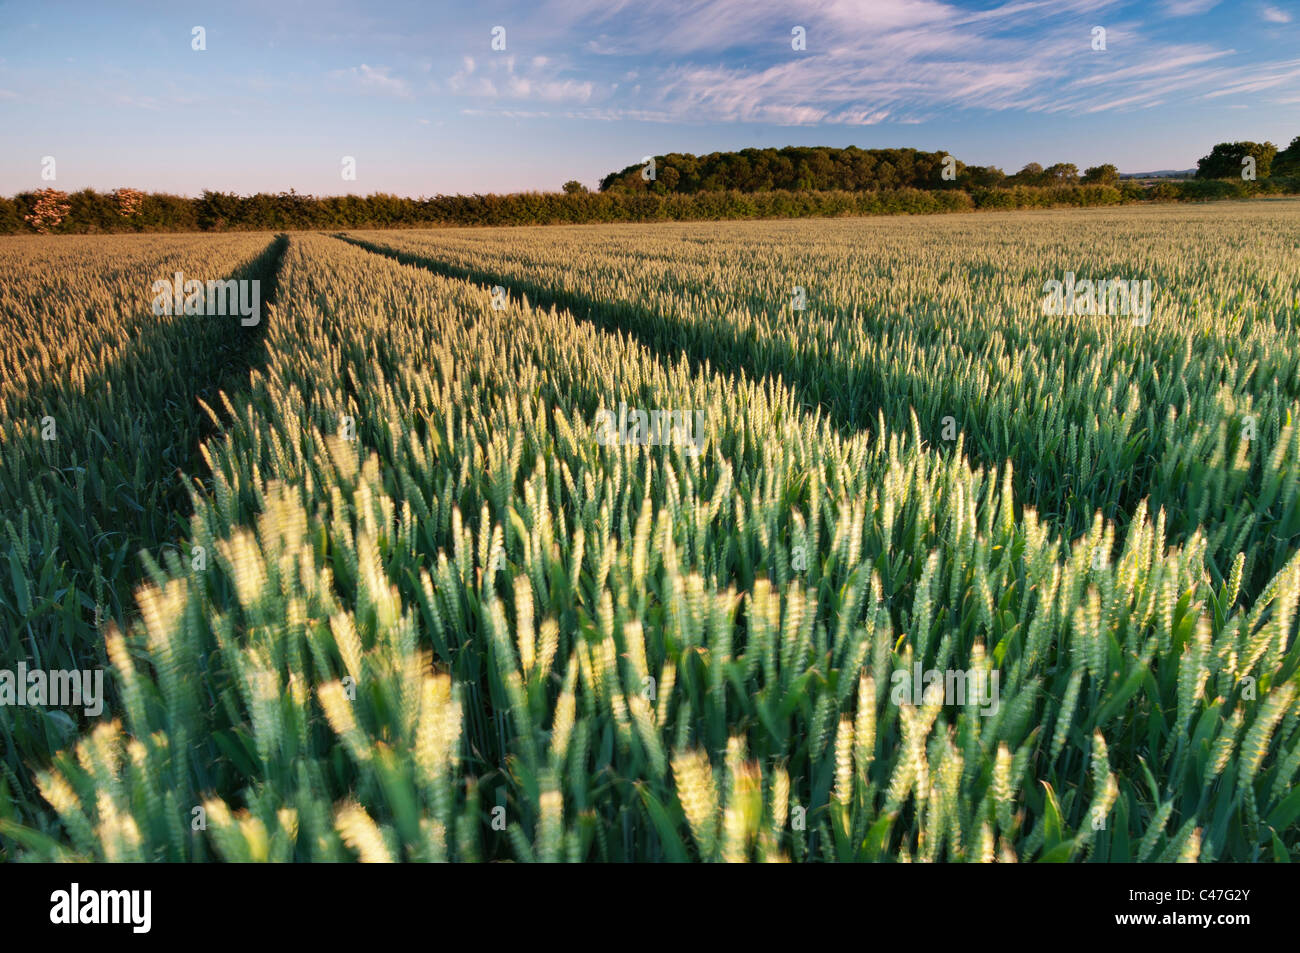 Croissance des cultures de blé dans un champ près de Wysall, Nottinghamshire, juin 2011. Banque D'Images